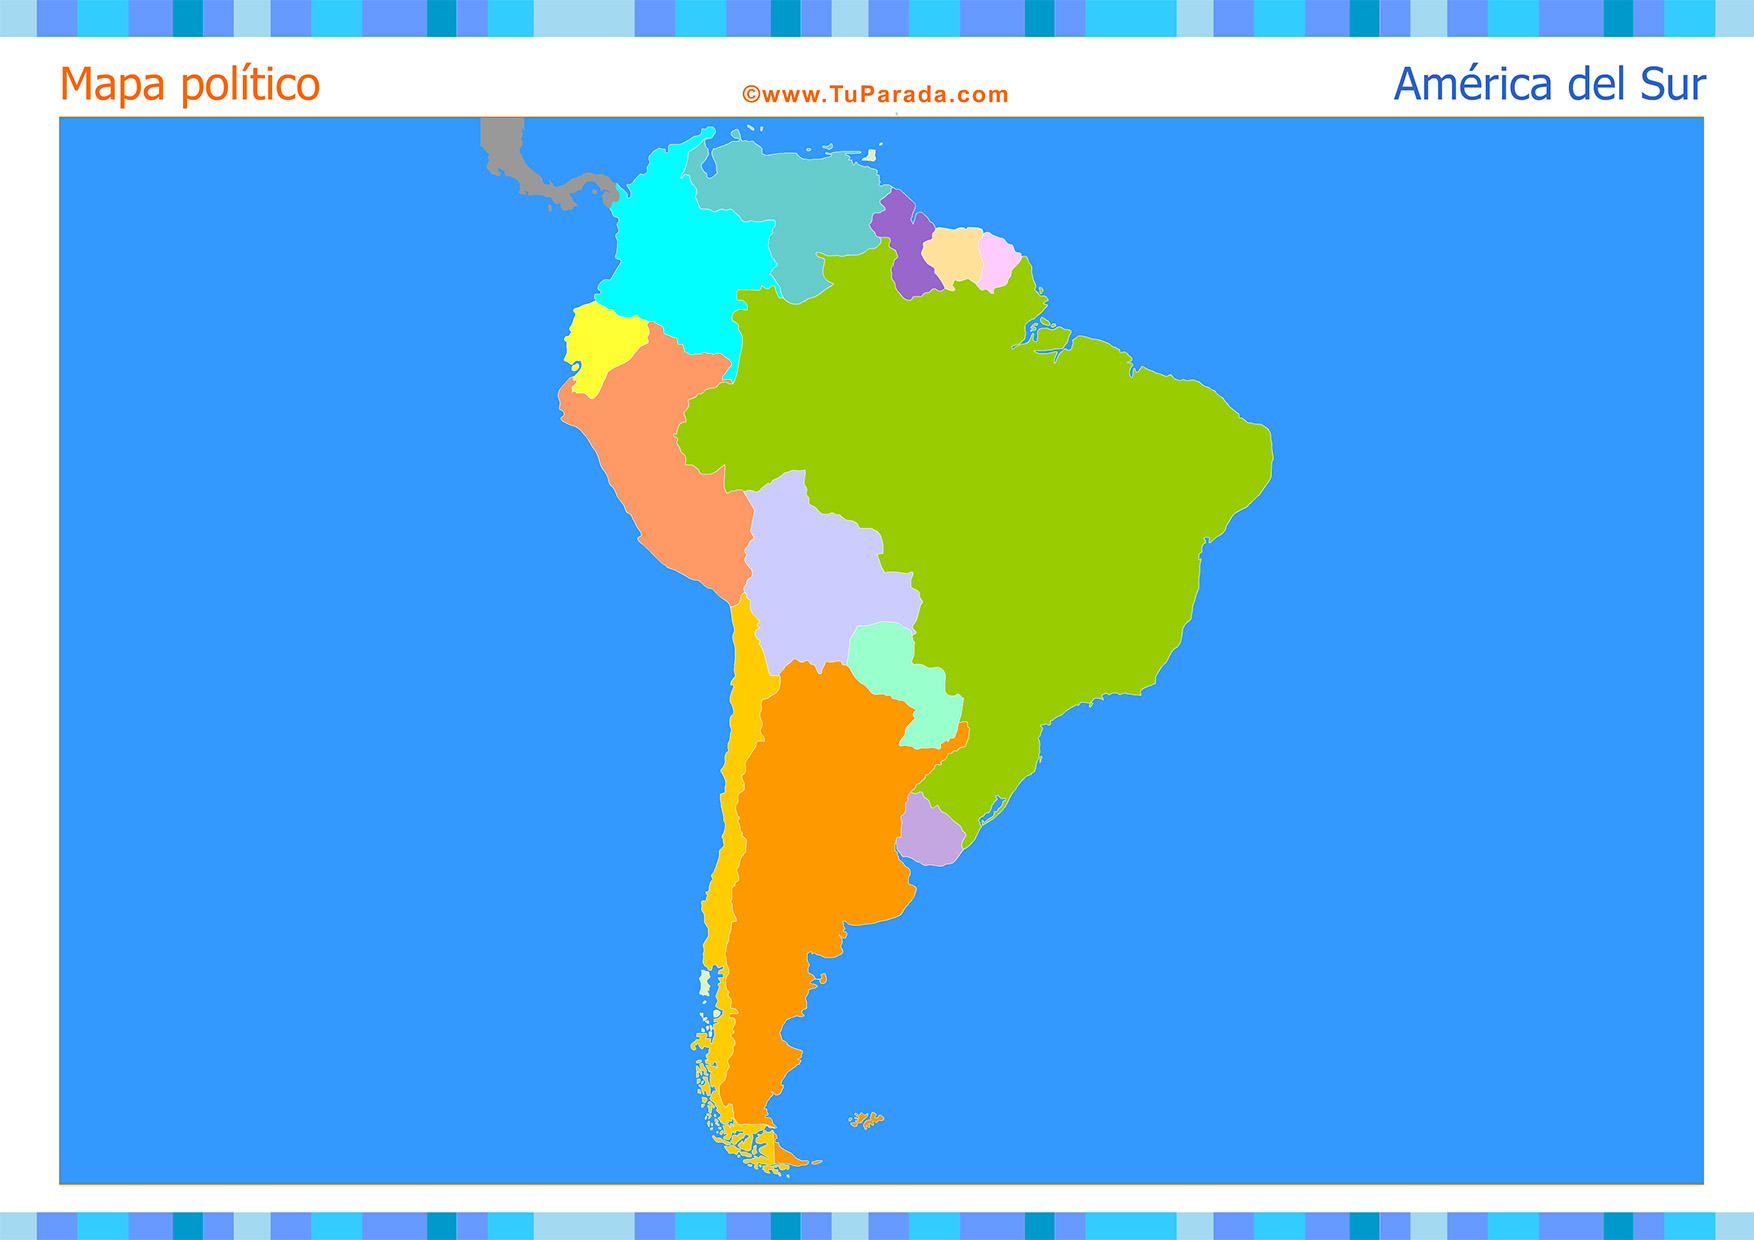 Mapa de América del Sur para completar